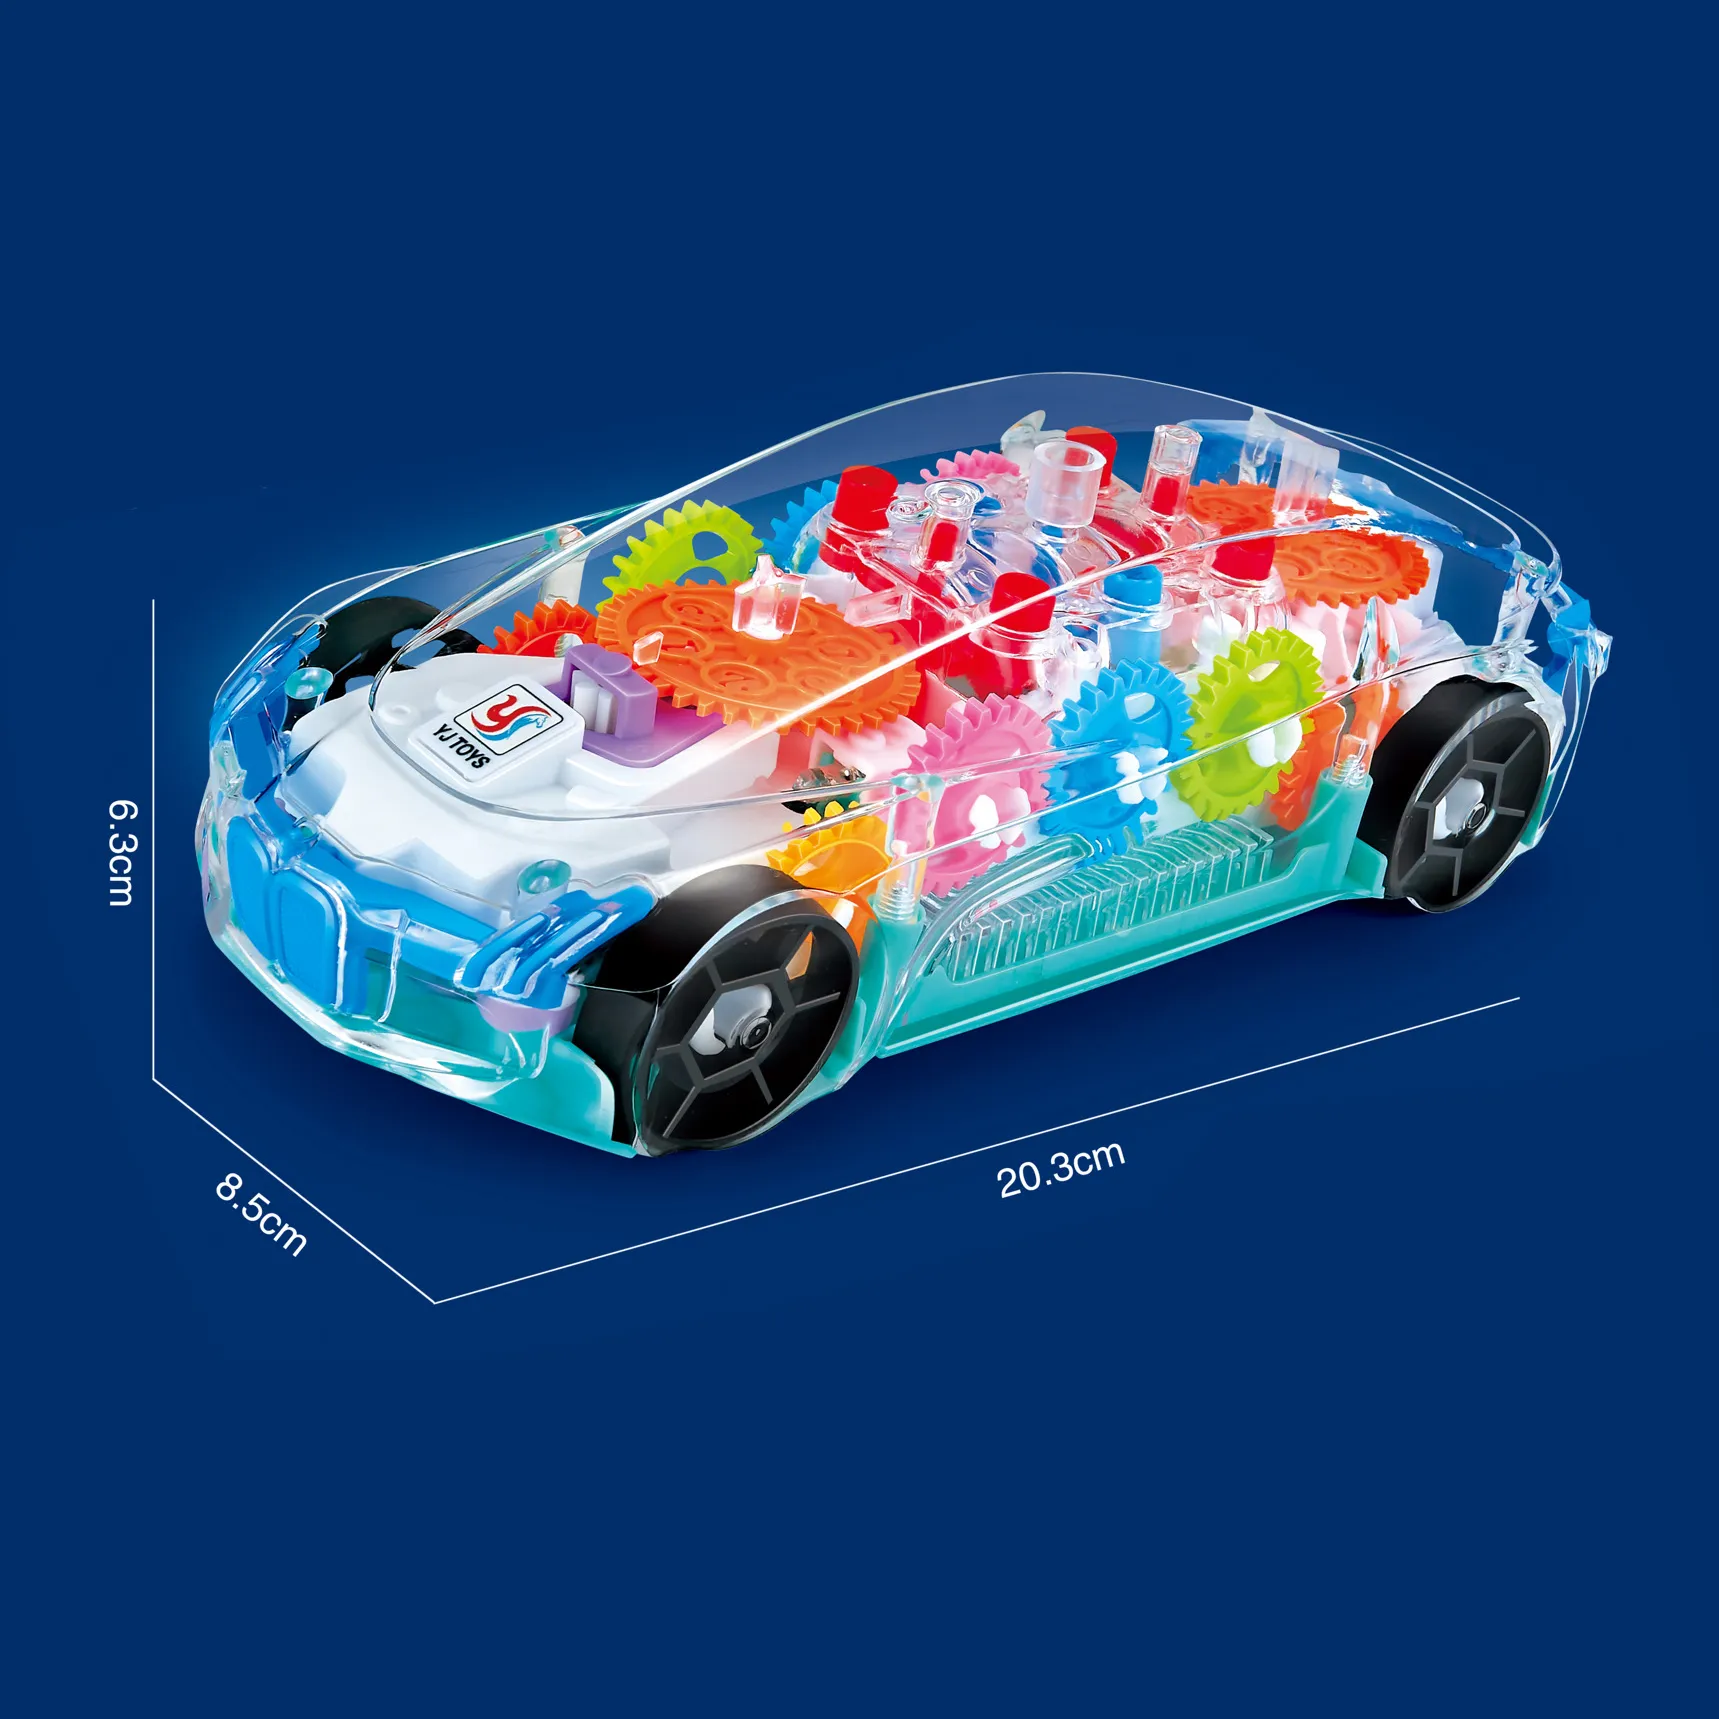 Elektrische transparante speelgoedauto Zie door auto's mechanische batterij bediende racevoertuig speelgoed zichtbaar gekleurde bewegende tandwielen briljante led -lichteffecten muziek